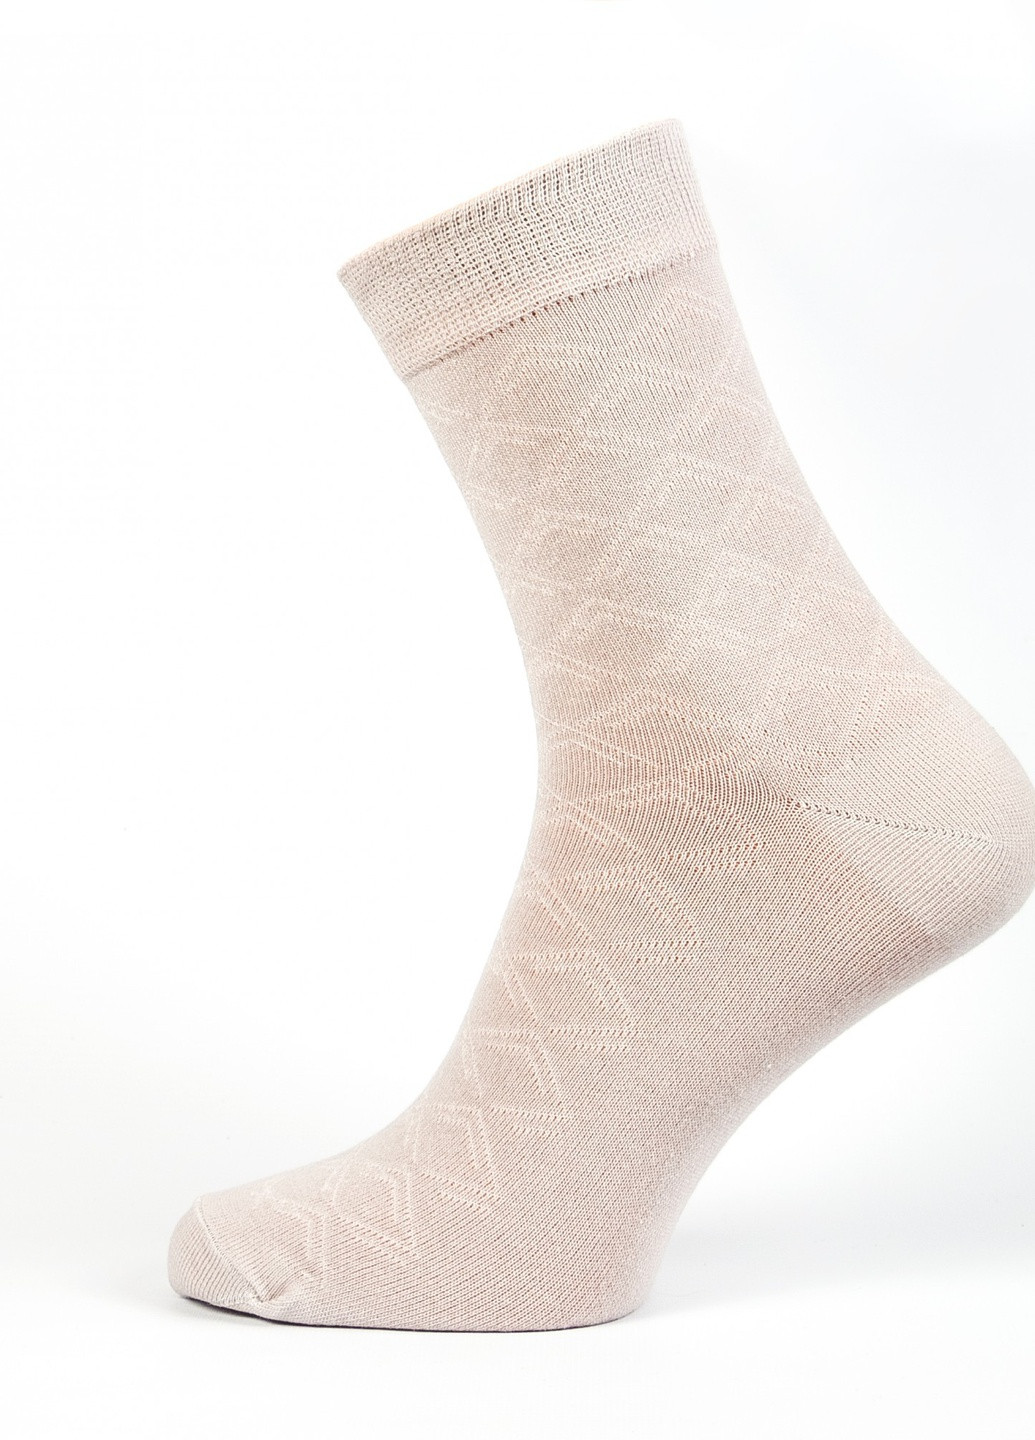 Шкарпетки чоловічі "Нова пара" середня висота 429 39-41р. НОВА ПАРА коротка висота з ущільненім носком однотонні сірі повсякденні